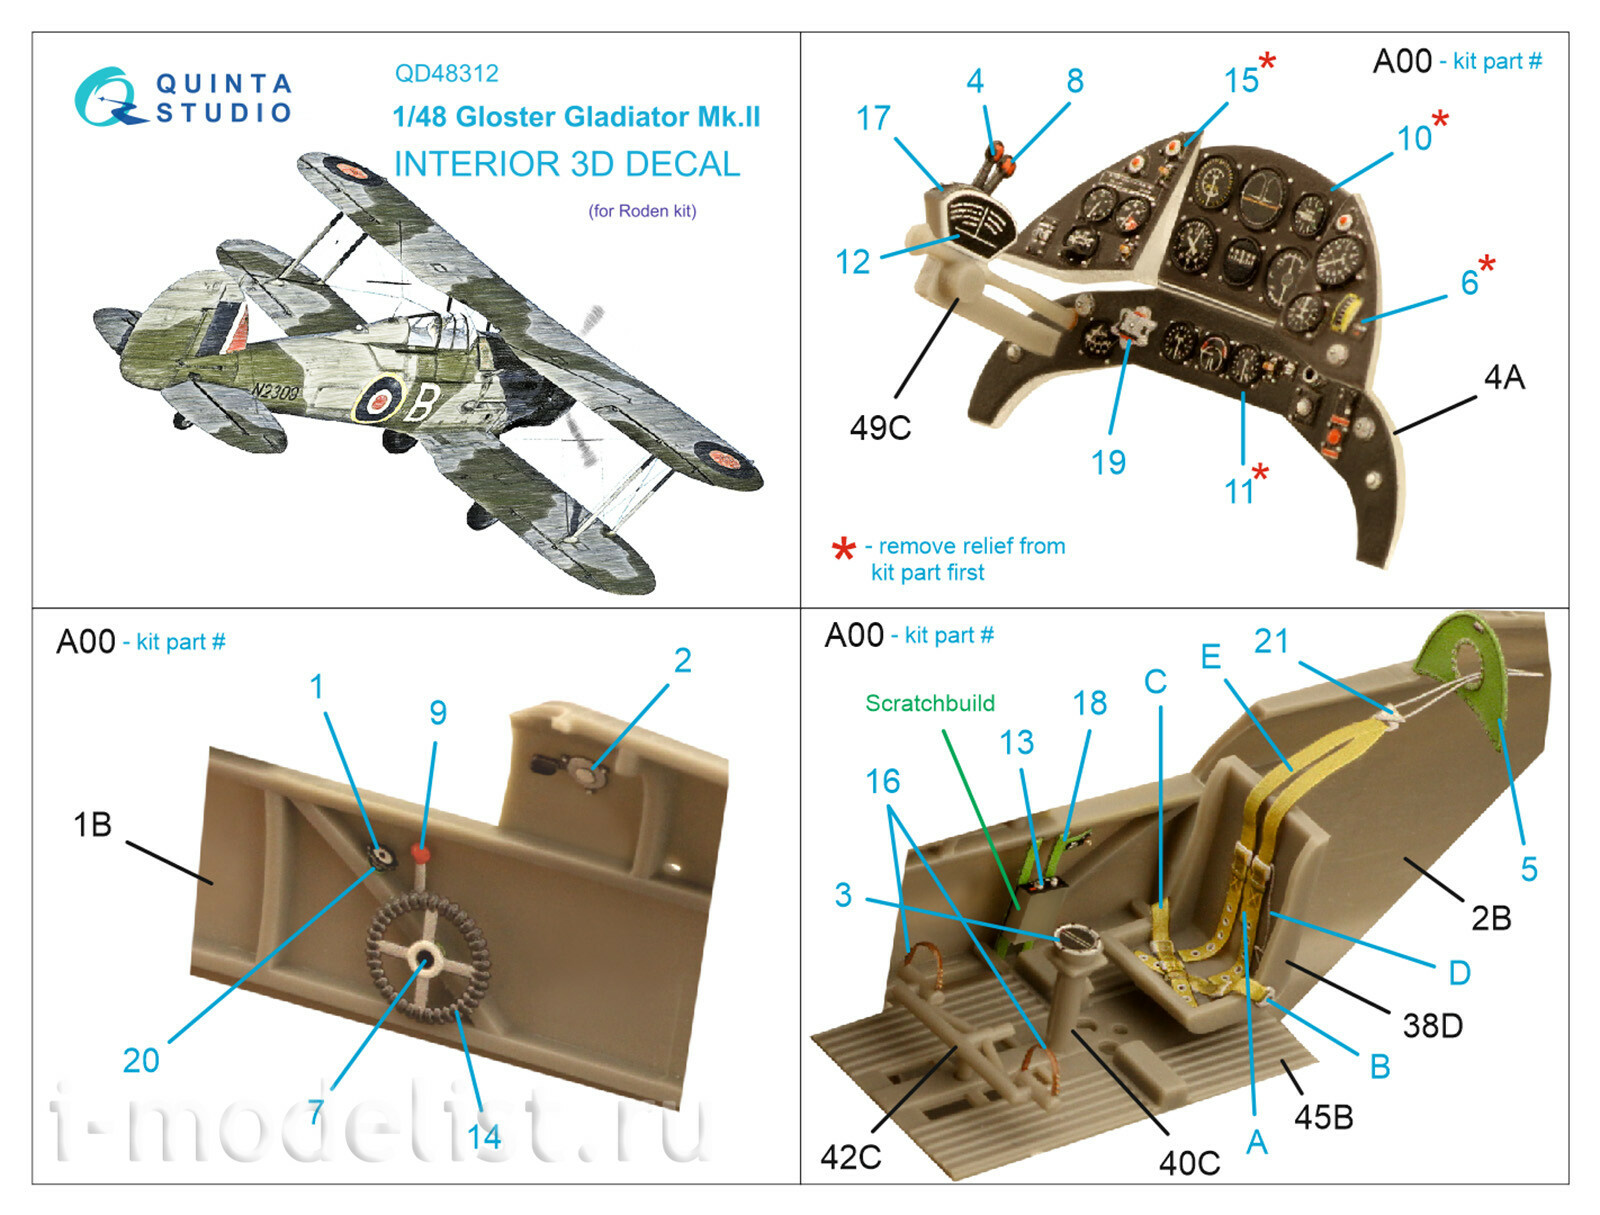 QD48312 Quinta Studio 1/48 3D Декаль интерьера Gloster Gladiator MKII (Roden)